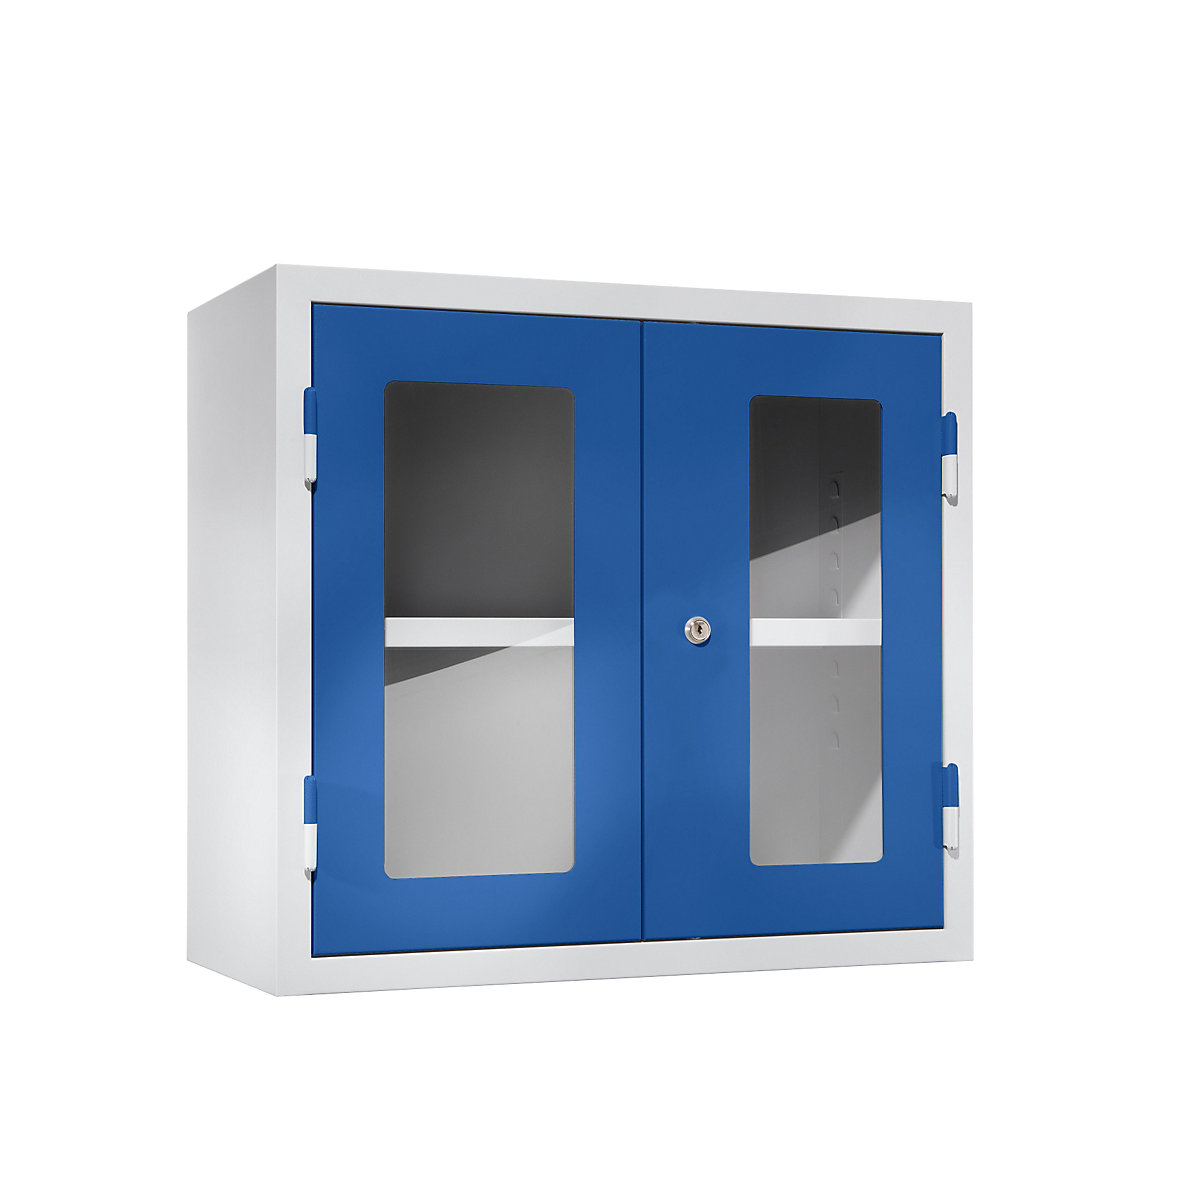 Werkplaatshangkast – eurokraft basic, h x b x d = 600 x 650 x 320 mm, deuren met venster, gentiaanblauw RAL 5010-13